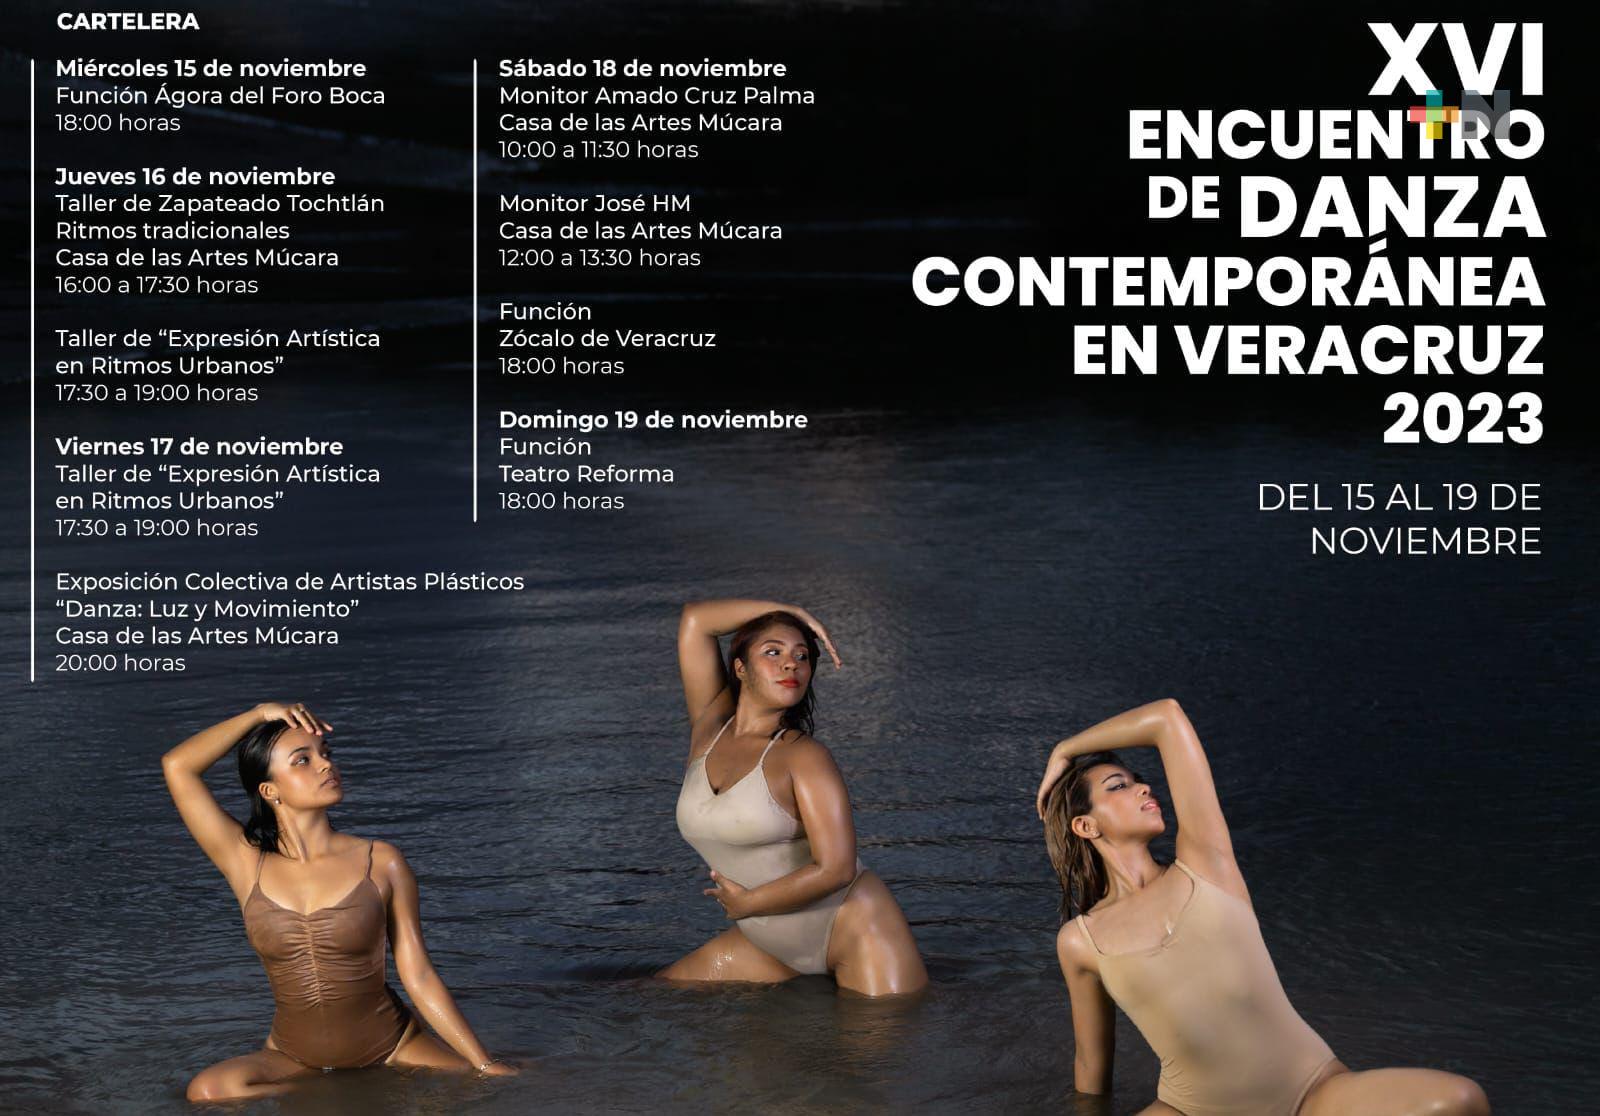 Del 15 al 19 de noviembre encuentro de danza contemporánea en Veracruz y Boca del Río